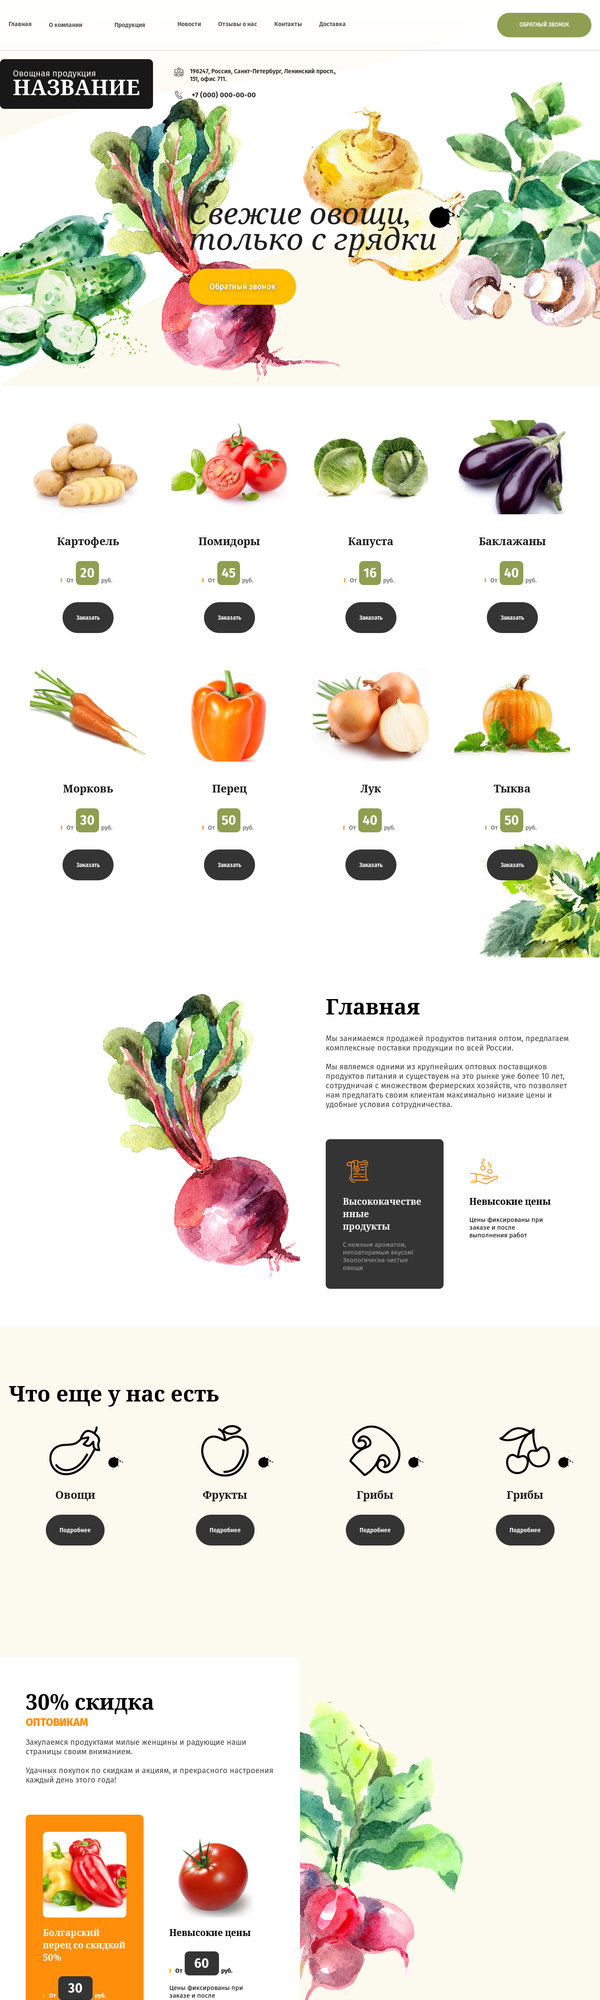 Готовый Сайт-Бизнес № 2694601 - Овощи, фрукты, орехи, грибы, ягоды (Десктопная версия)